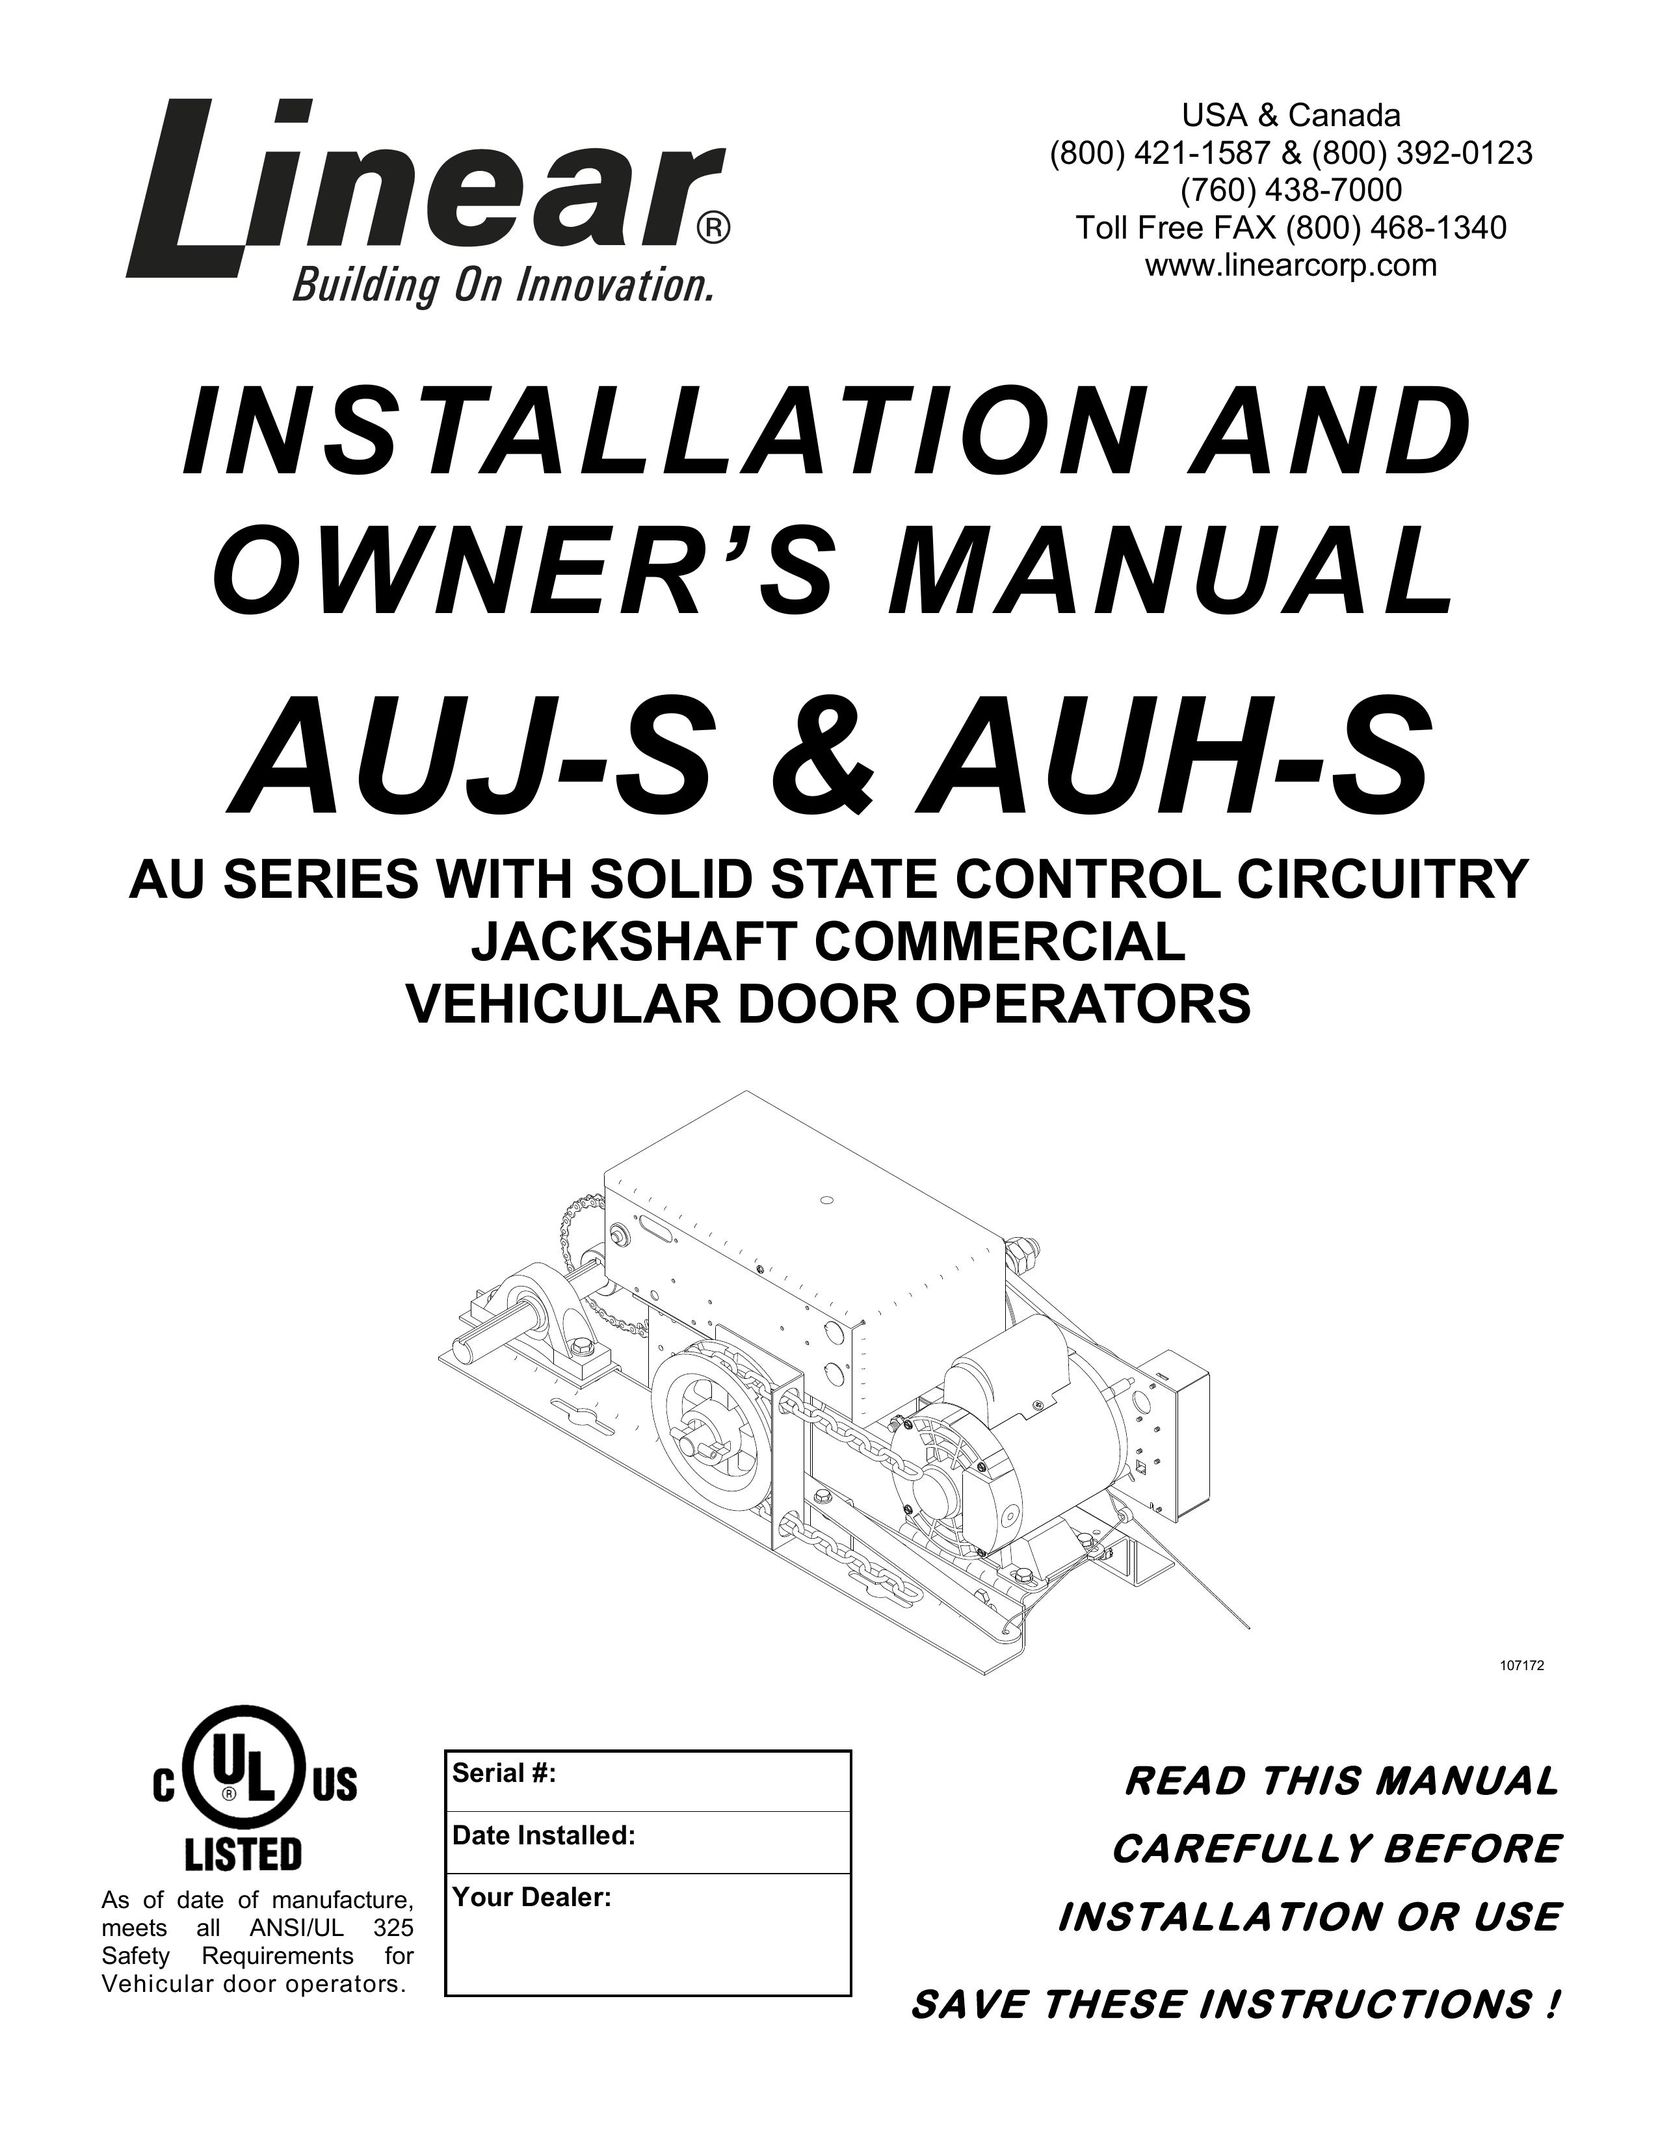 Linear AUH-S Garage Door Opener User Manual